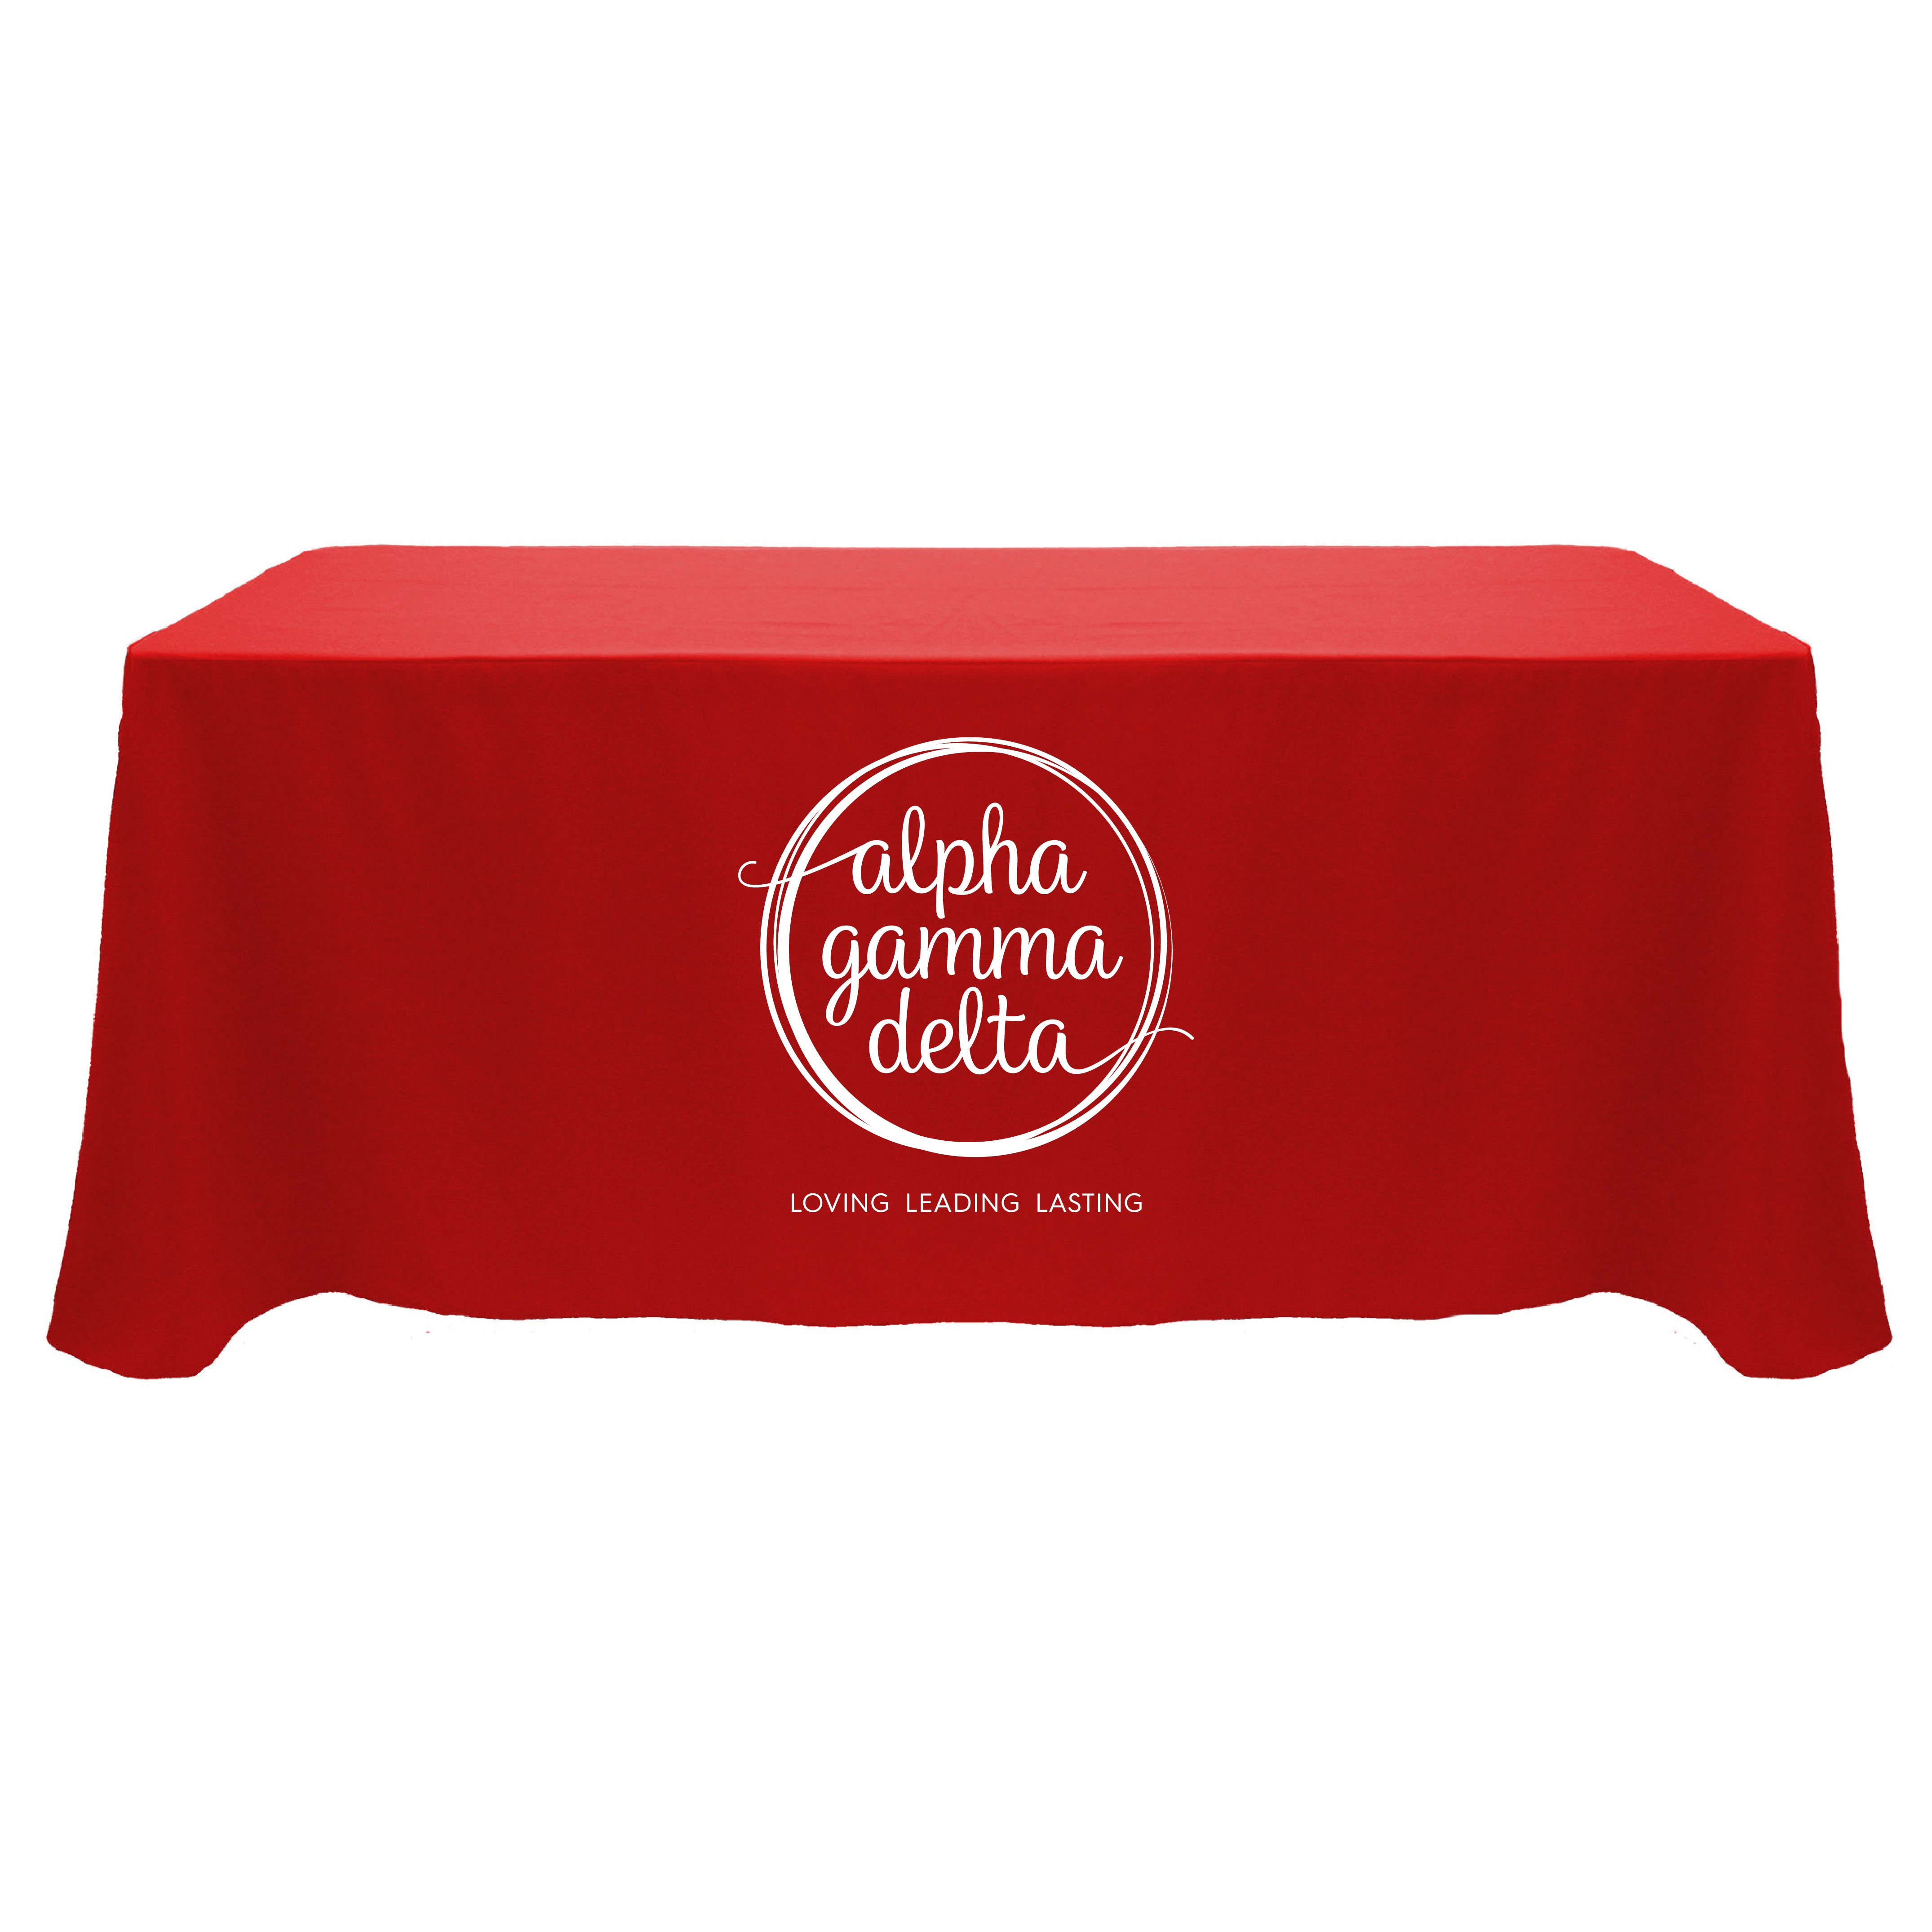 Alpha Gamma Delta Tablecloth